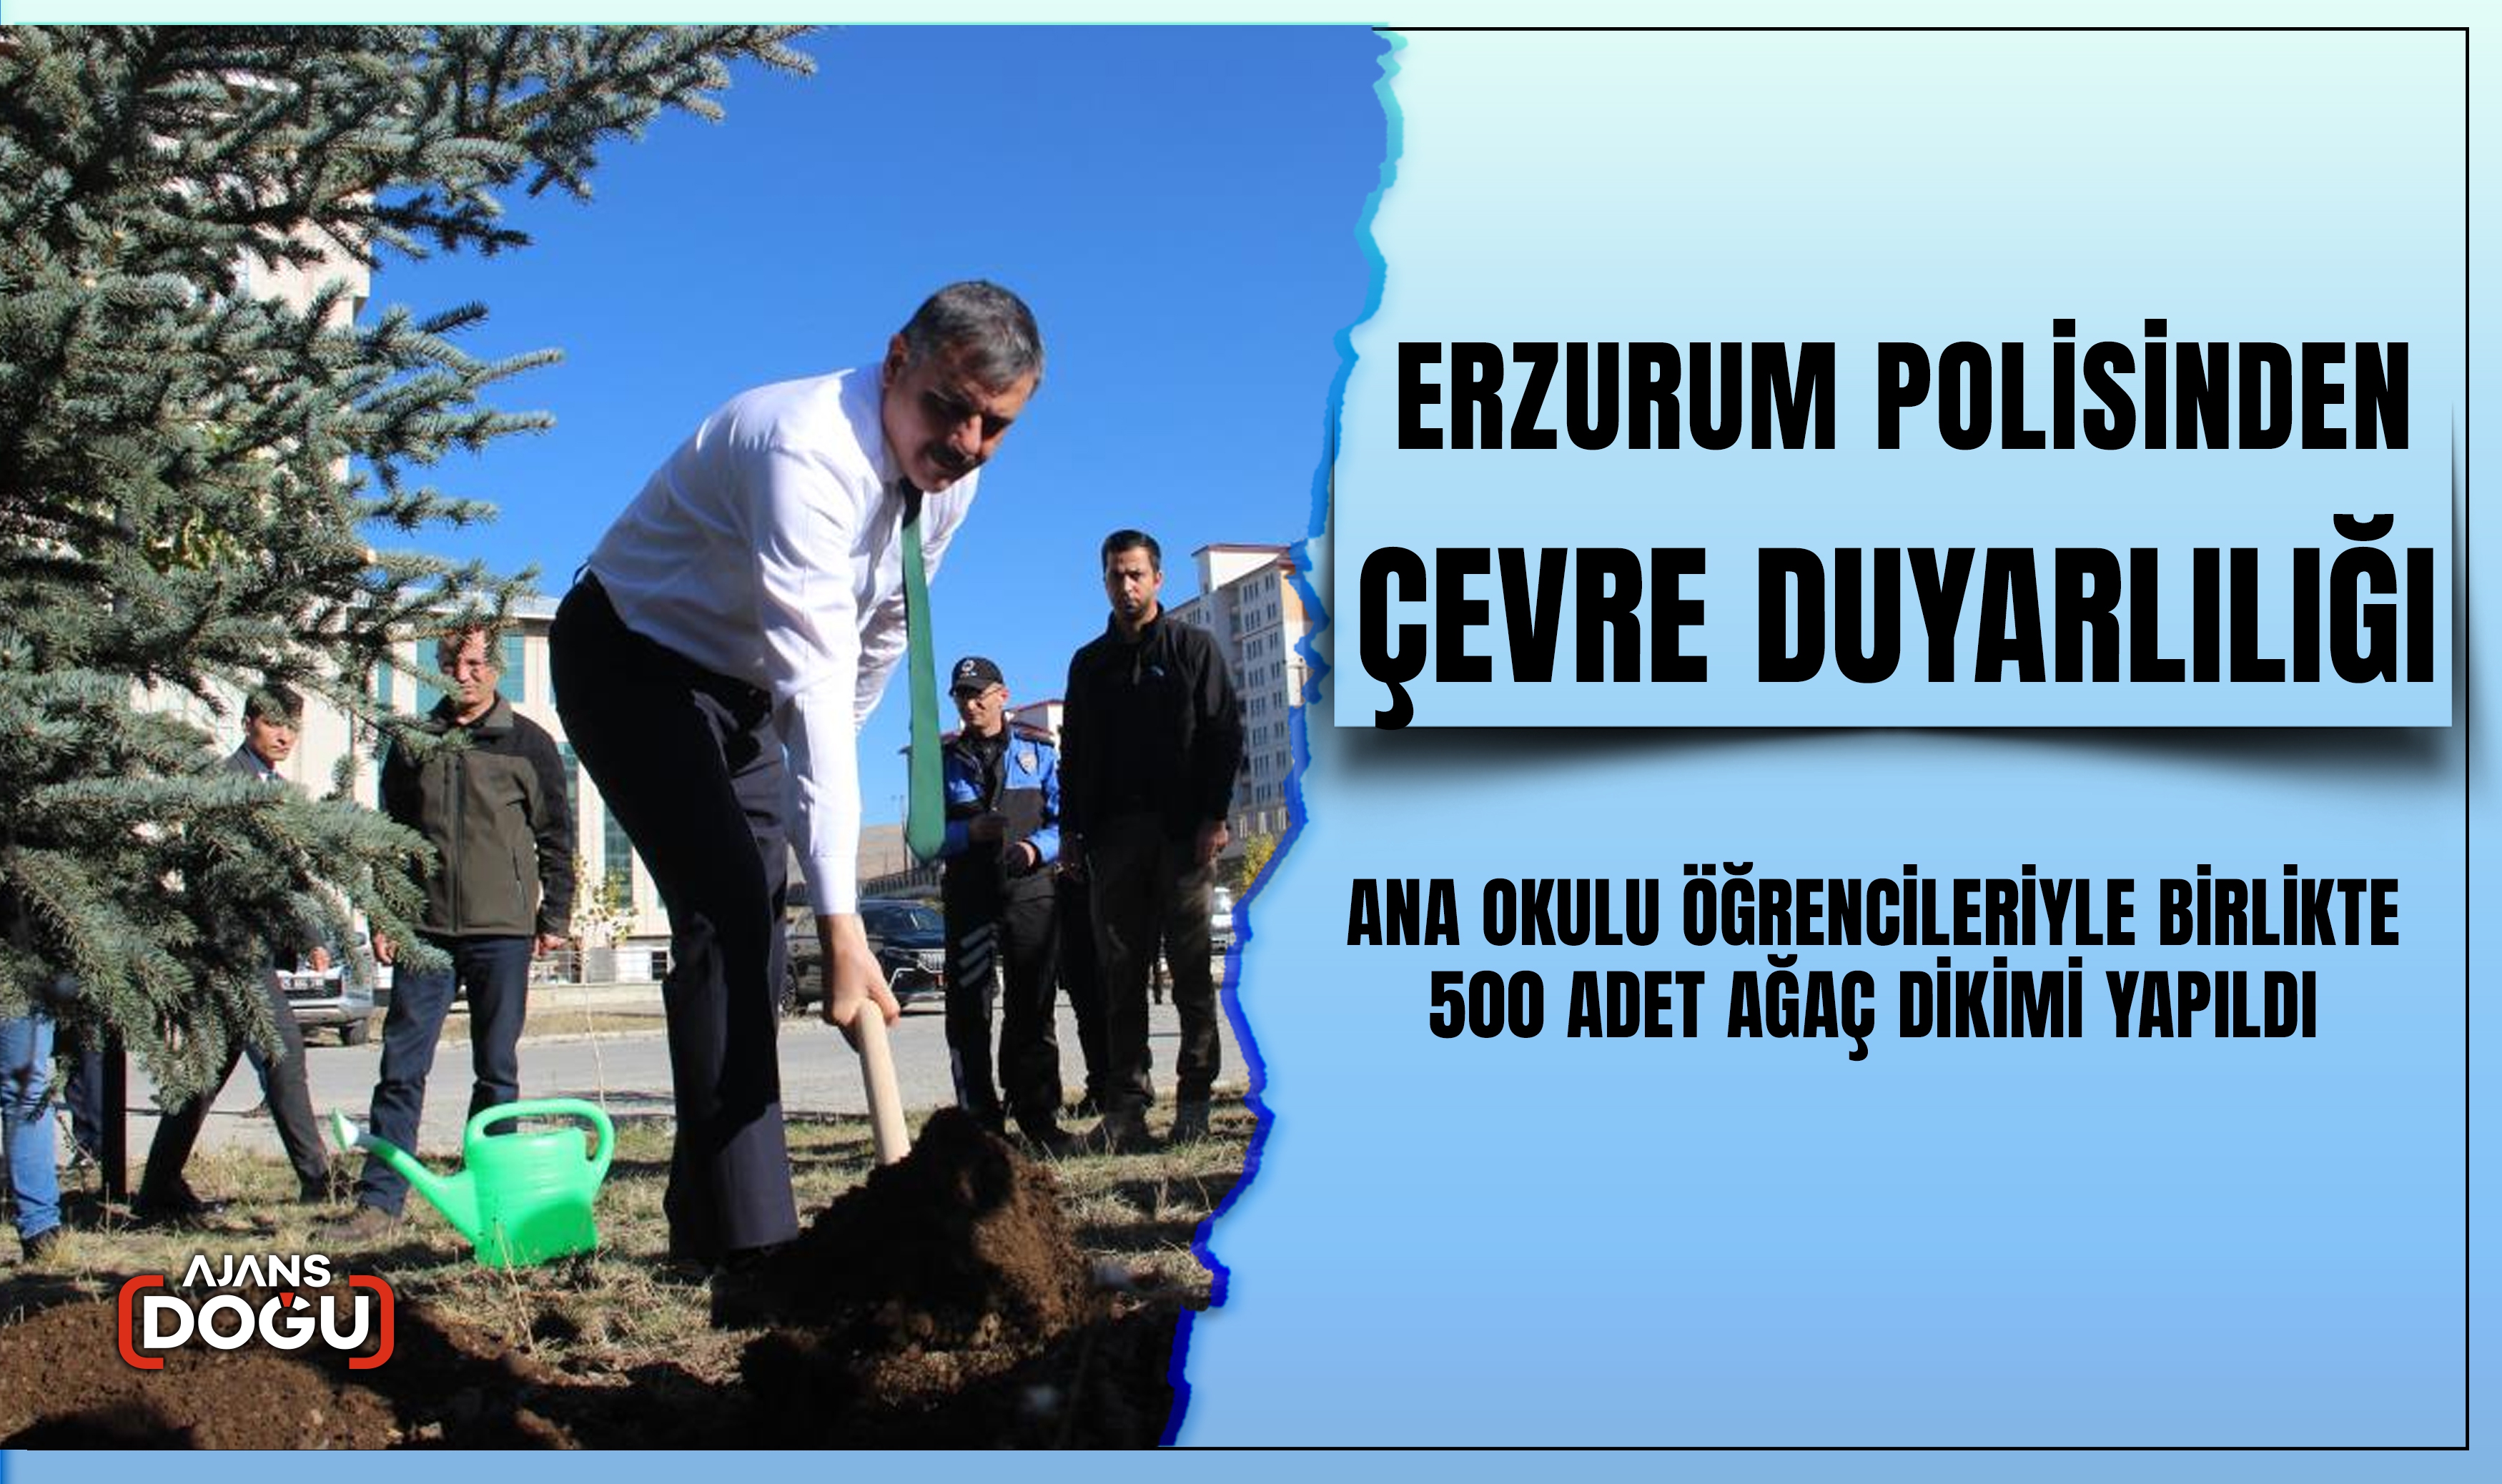 Erzurum polisinden çevre duyarlılığı